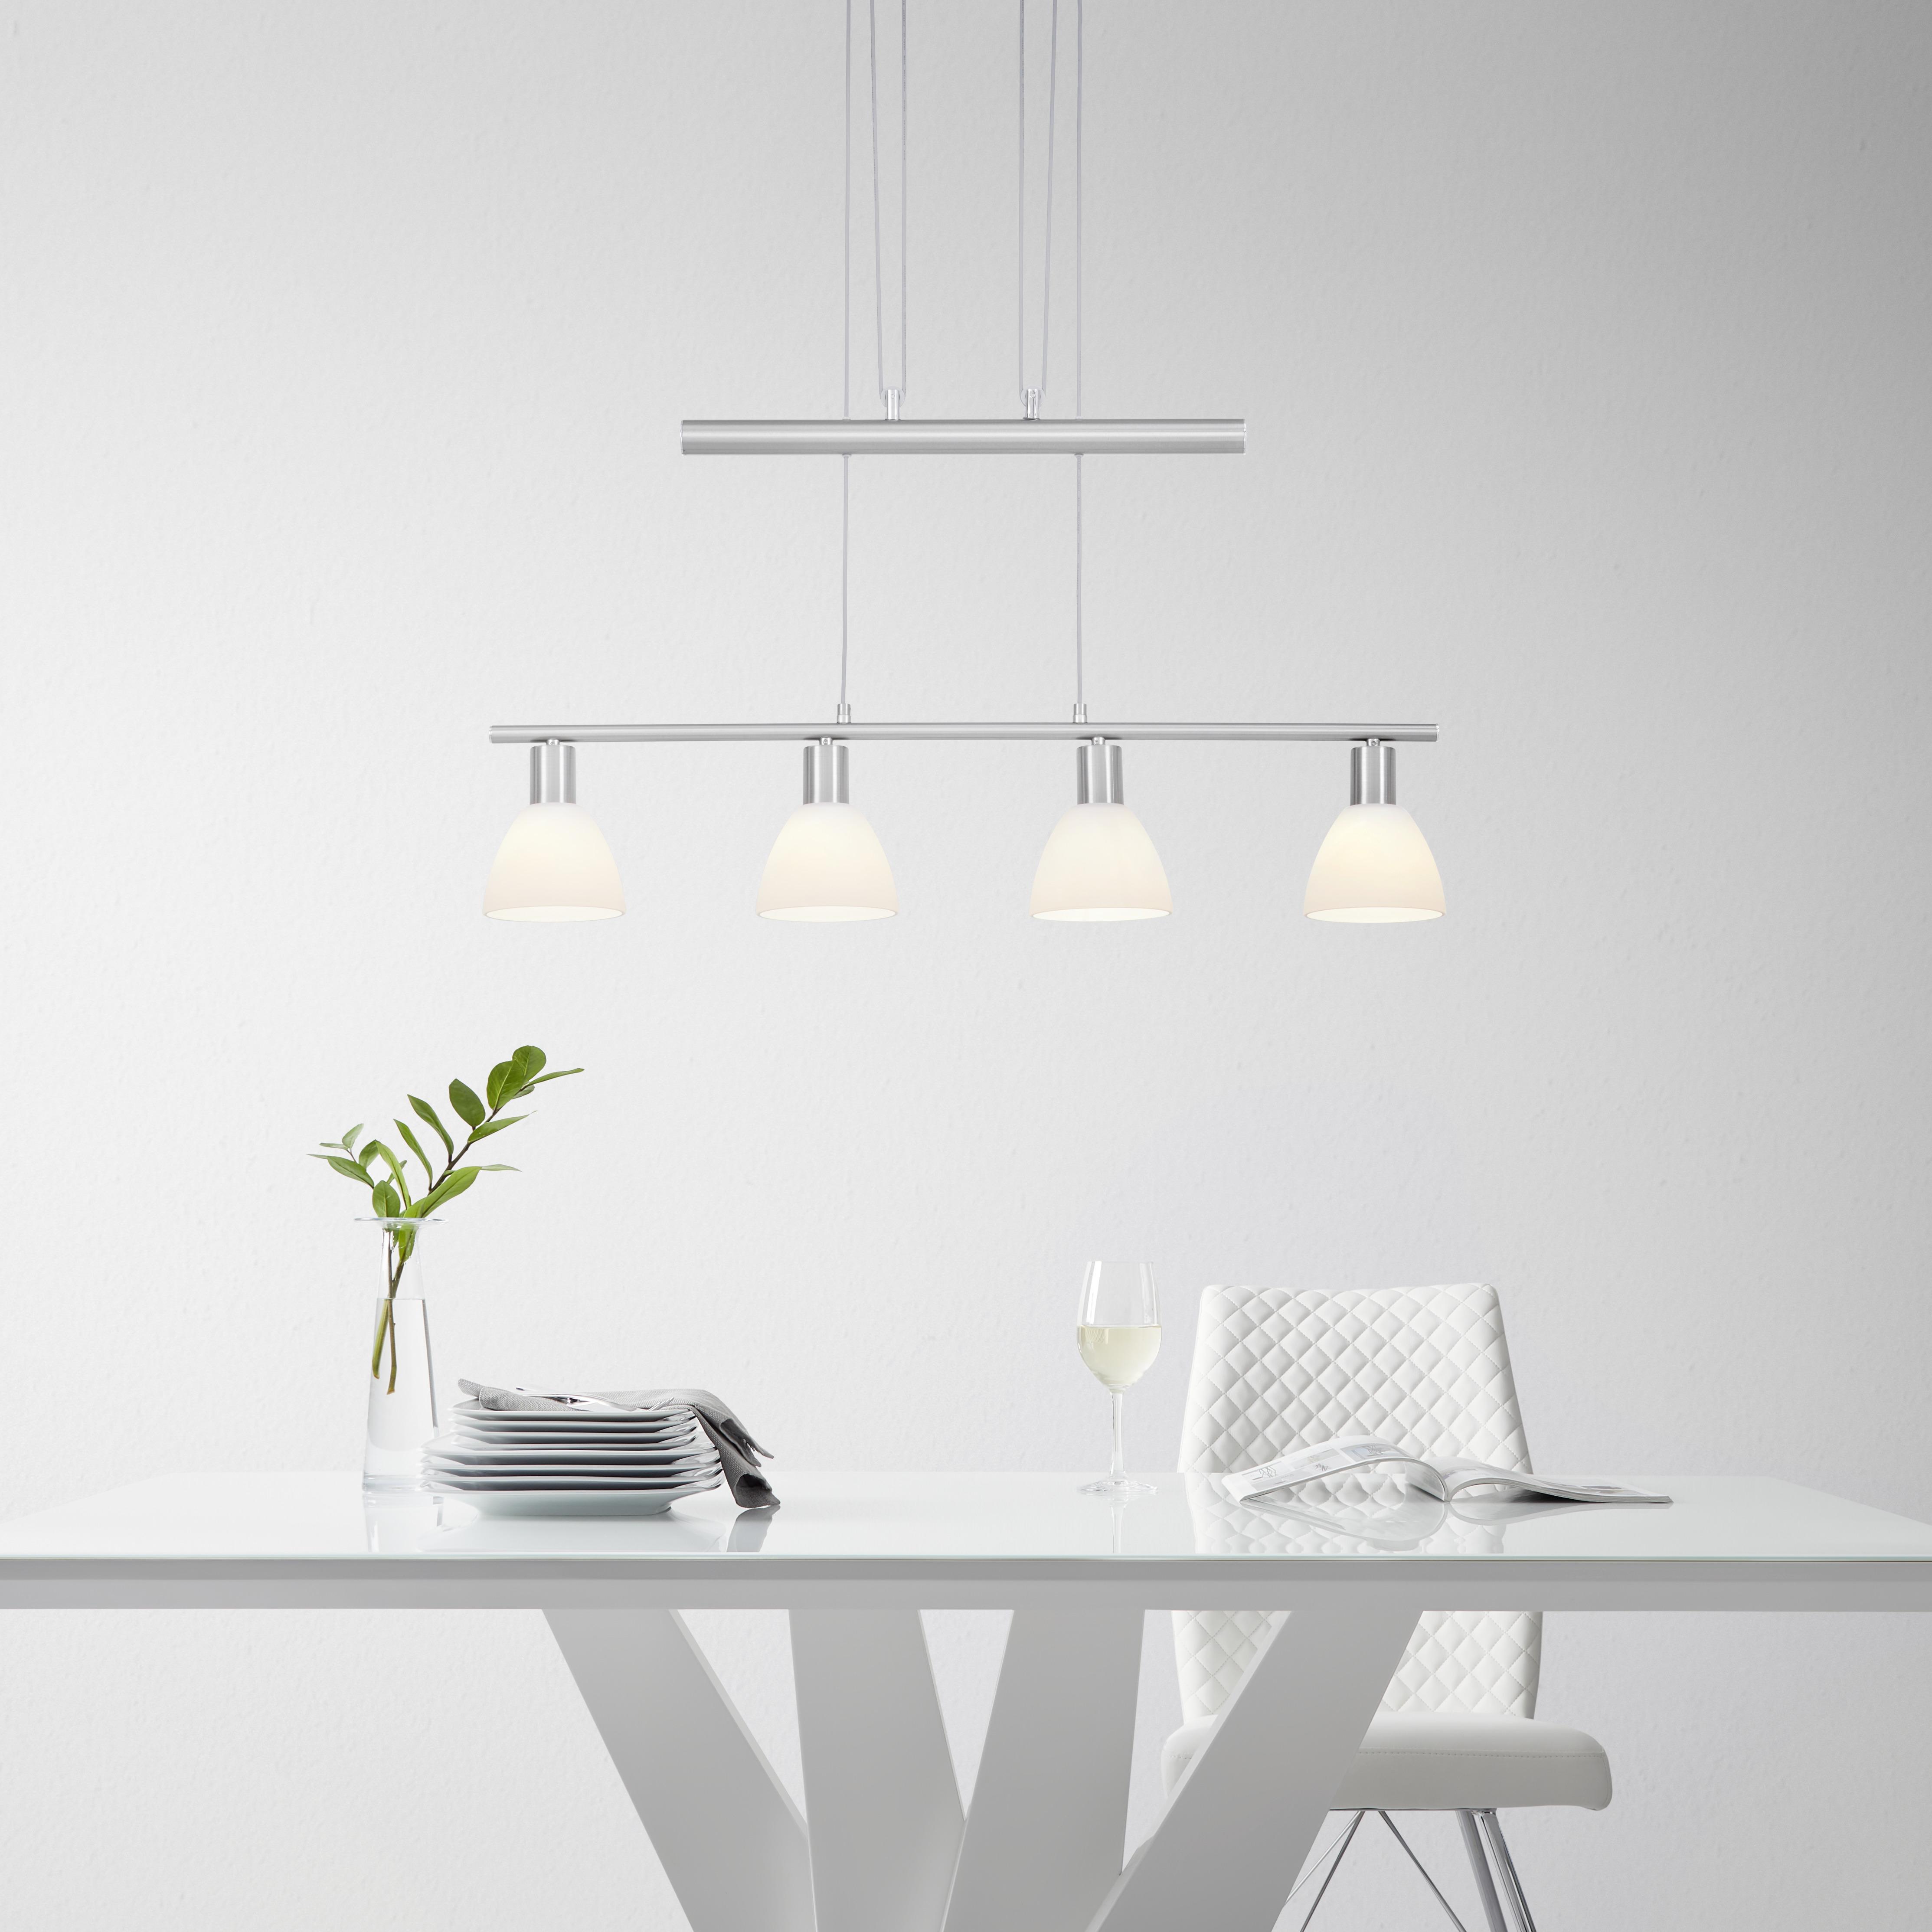 Závesná Lampa Gido 180cm, 40 Watt - opál/niklová, Konvenčný, kov/sklo (80/12/180cm) - Modern Living